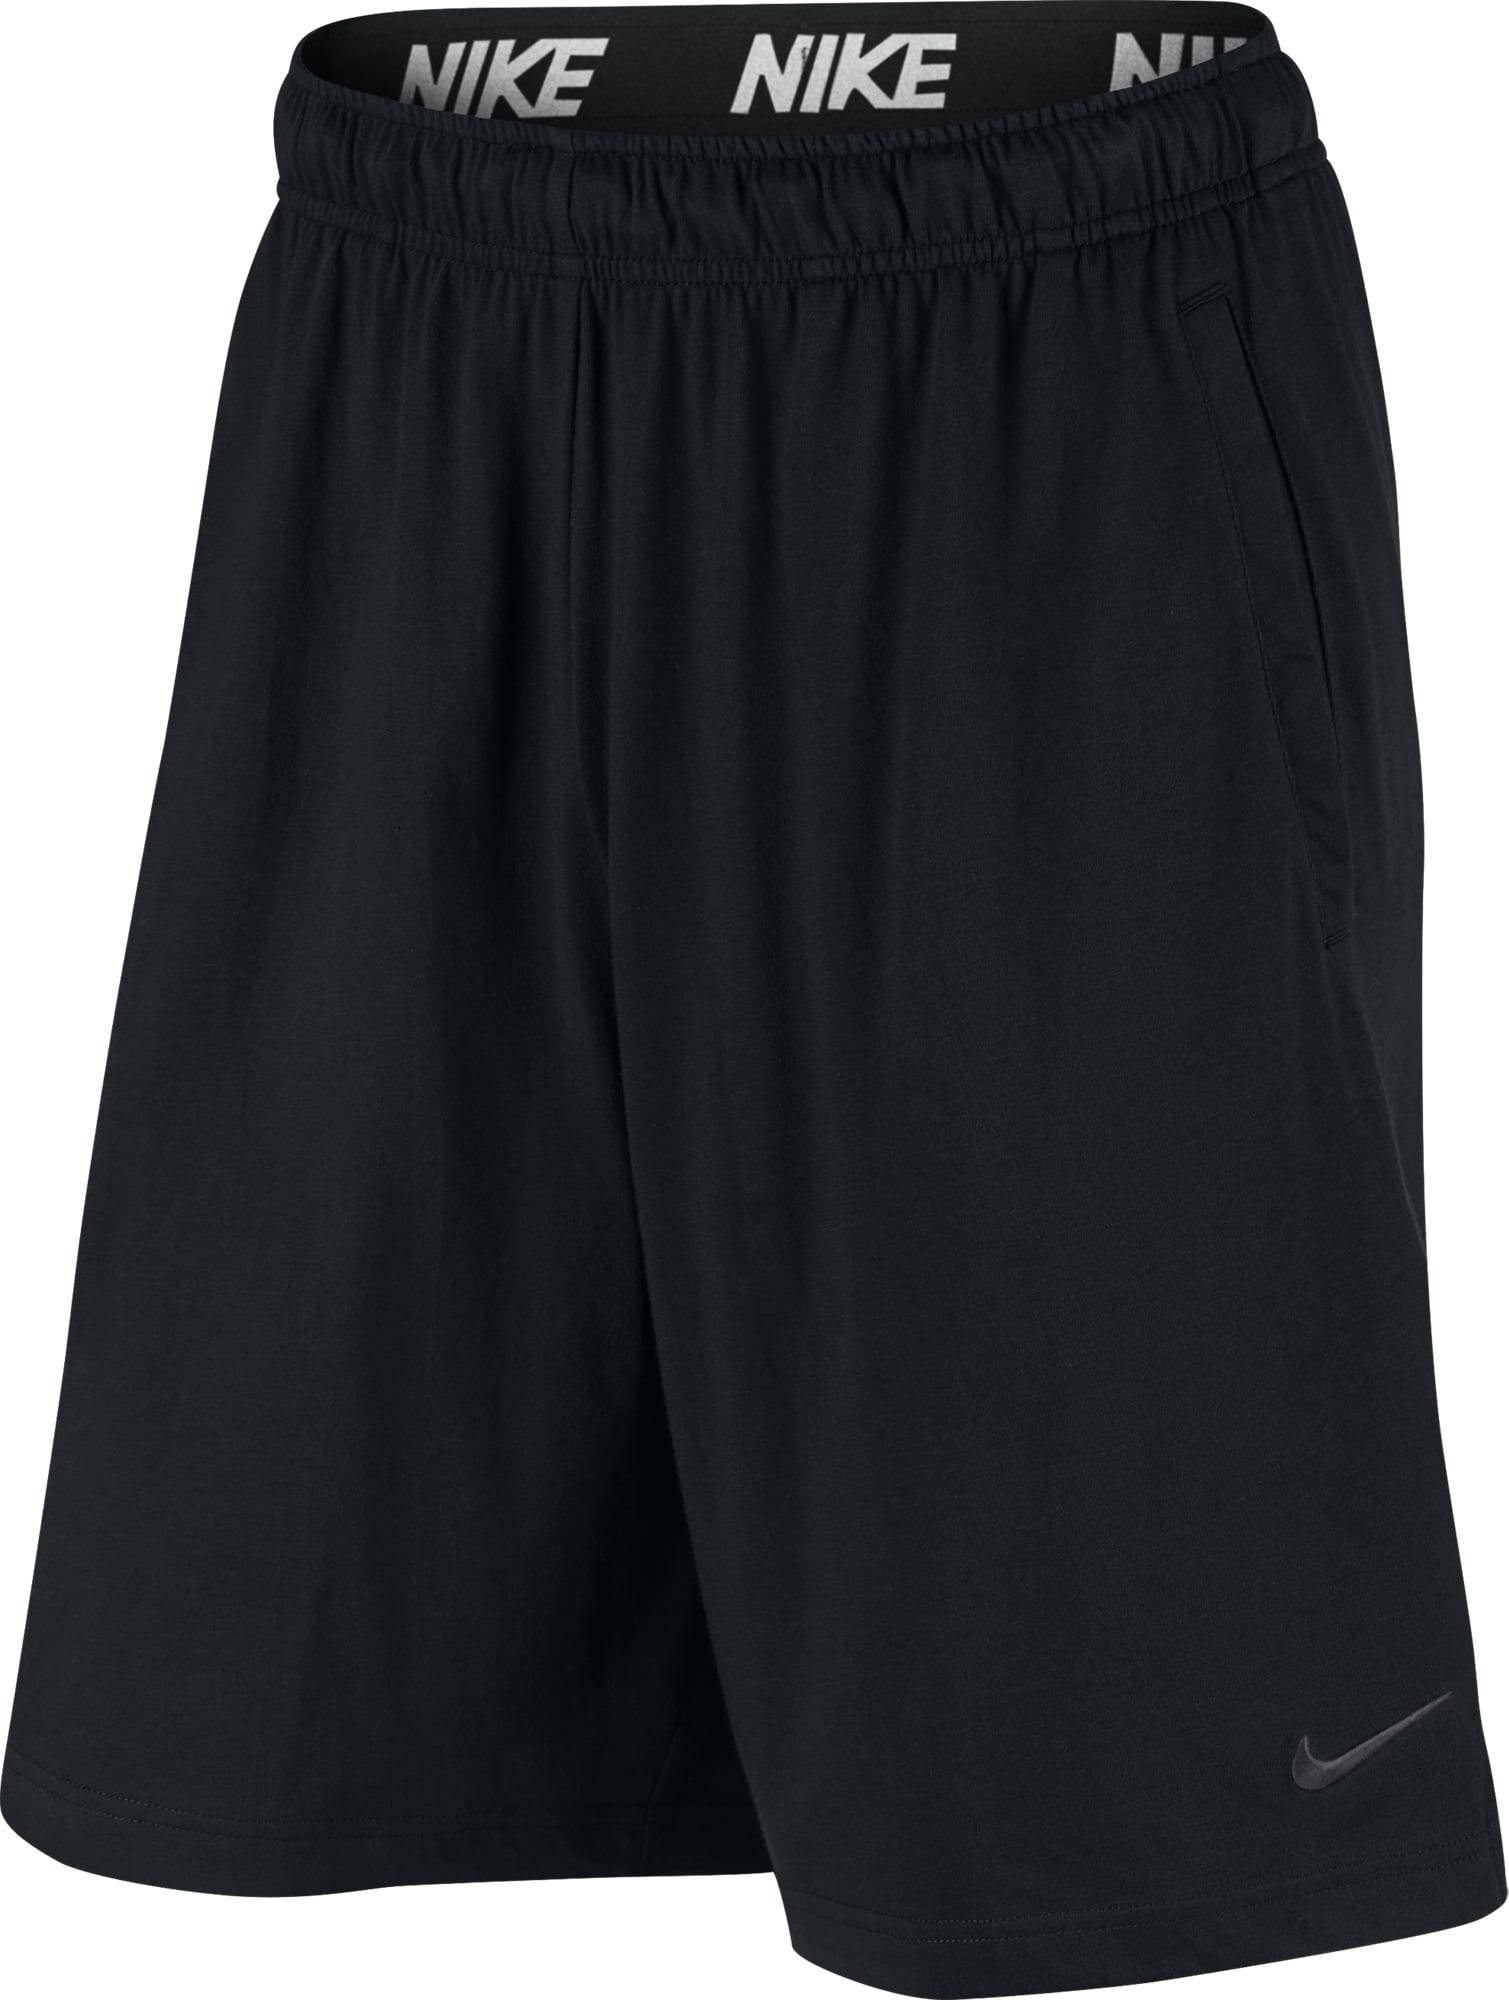 Nike - Nike Men's Dri-FIT Cotton Training Shorts 842267-010 Black ...